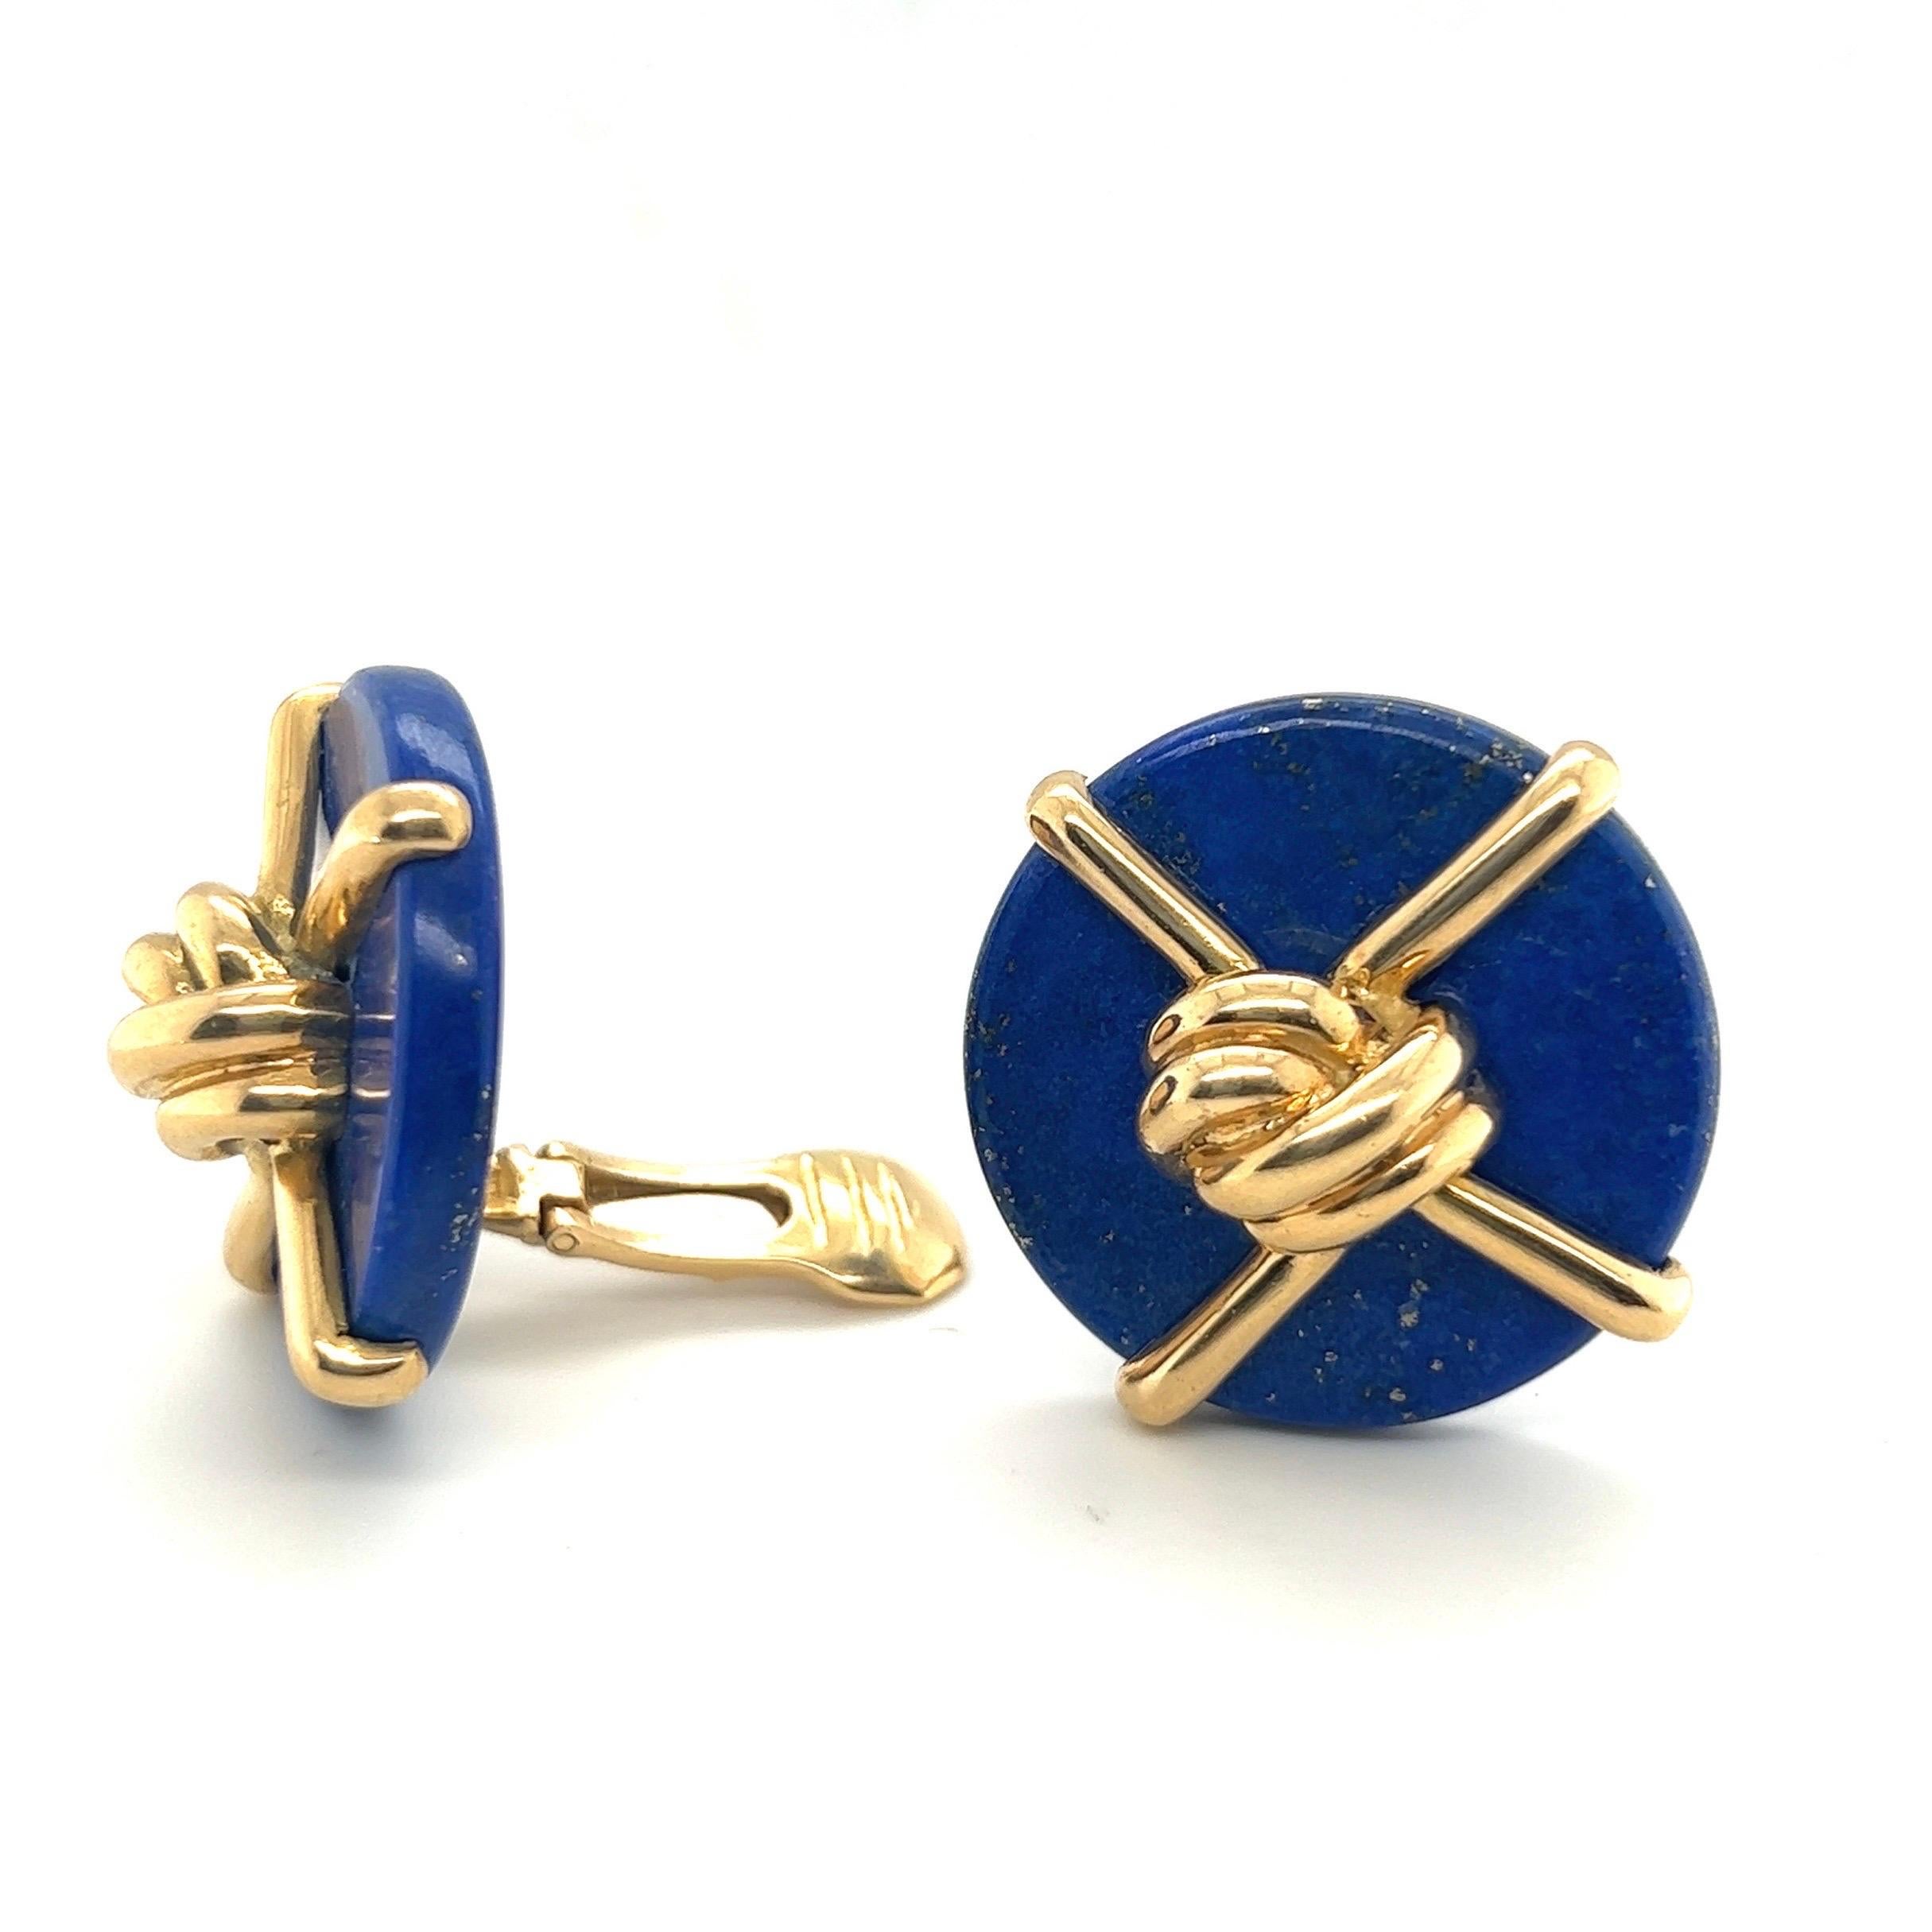 Ikonische Lapislazuli-Ohrringe aus 18 Karat Gold, entworfen von Aldo Cipullo für Cartier im Jahr 1973.
Geometrisch gestaltete Ohrclips, die jeweils aus einer tiefblauen Lapislazuli-Scheibe bestehen. Die Vorderseite ist mit poliertem 18-karätigem